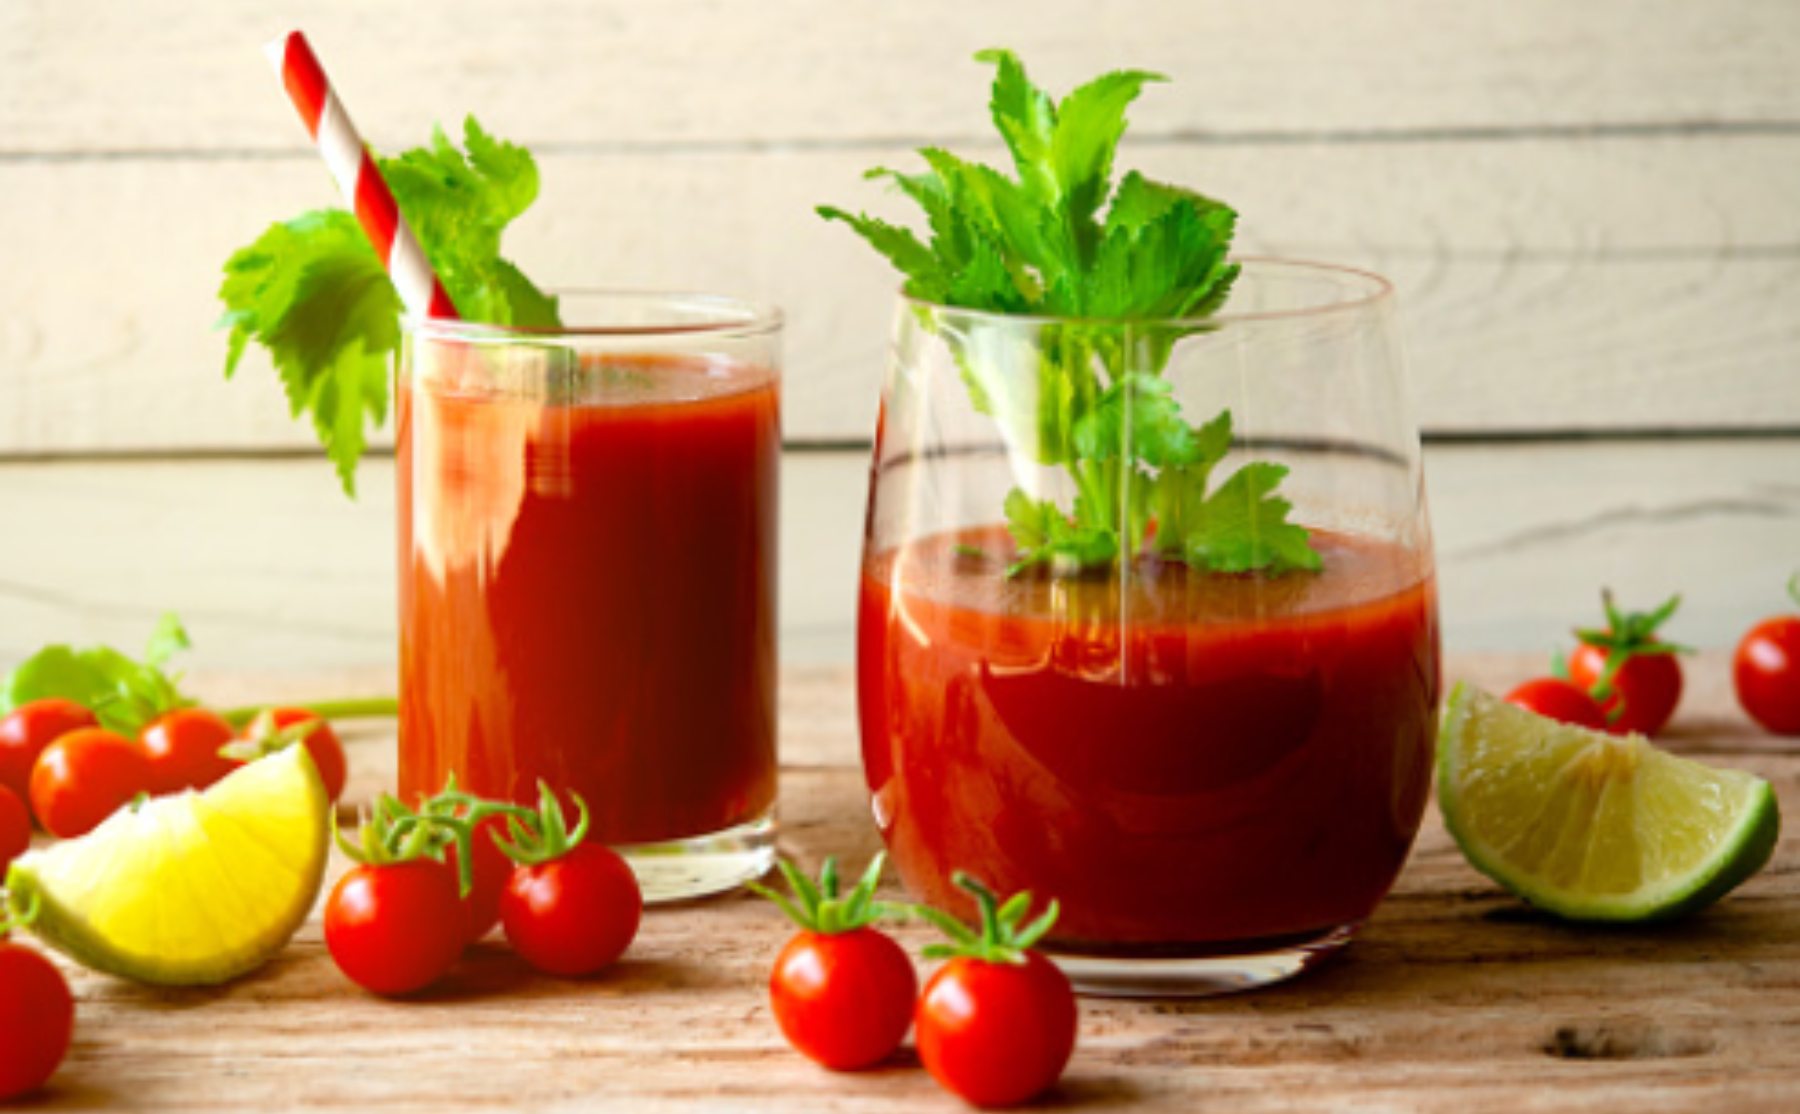 Hay vida más allá del gazpacho, un delicioso zumo o jugo de tomate puede convertirse en la alternativa rápida y low cost de una sopa fría de excepción.